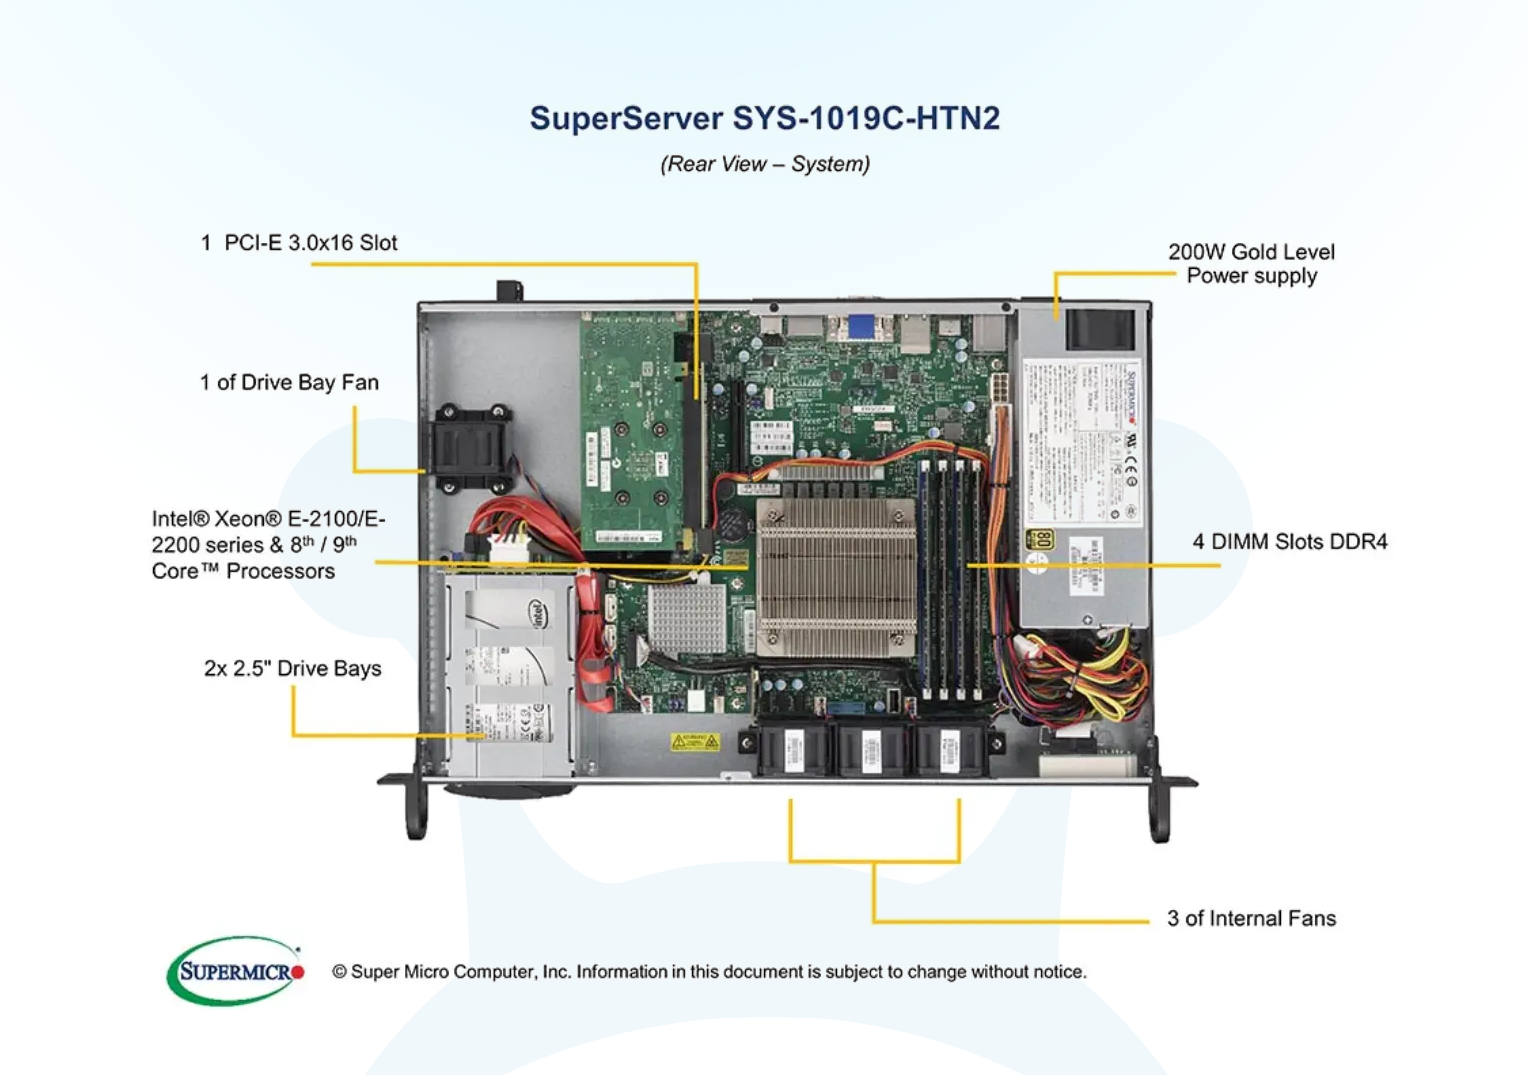 SuperServer 1019C-HTN2